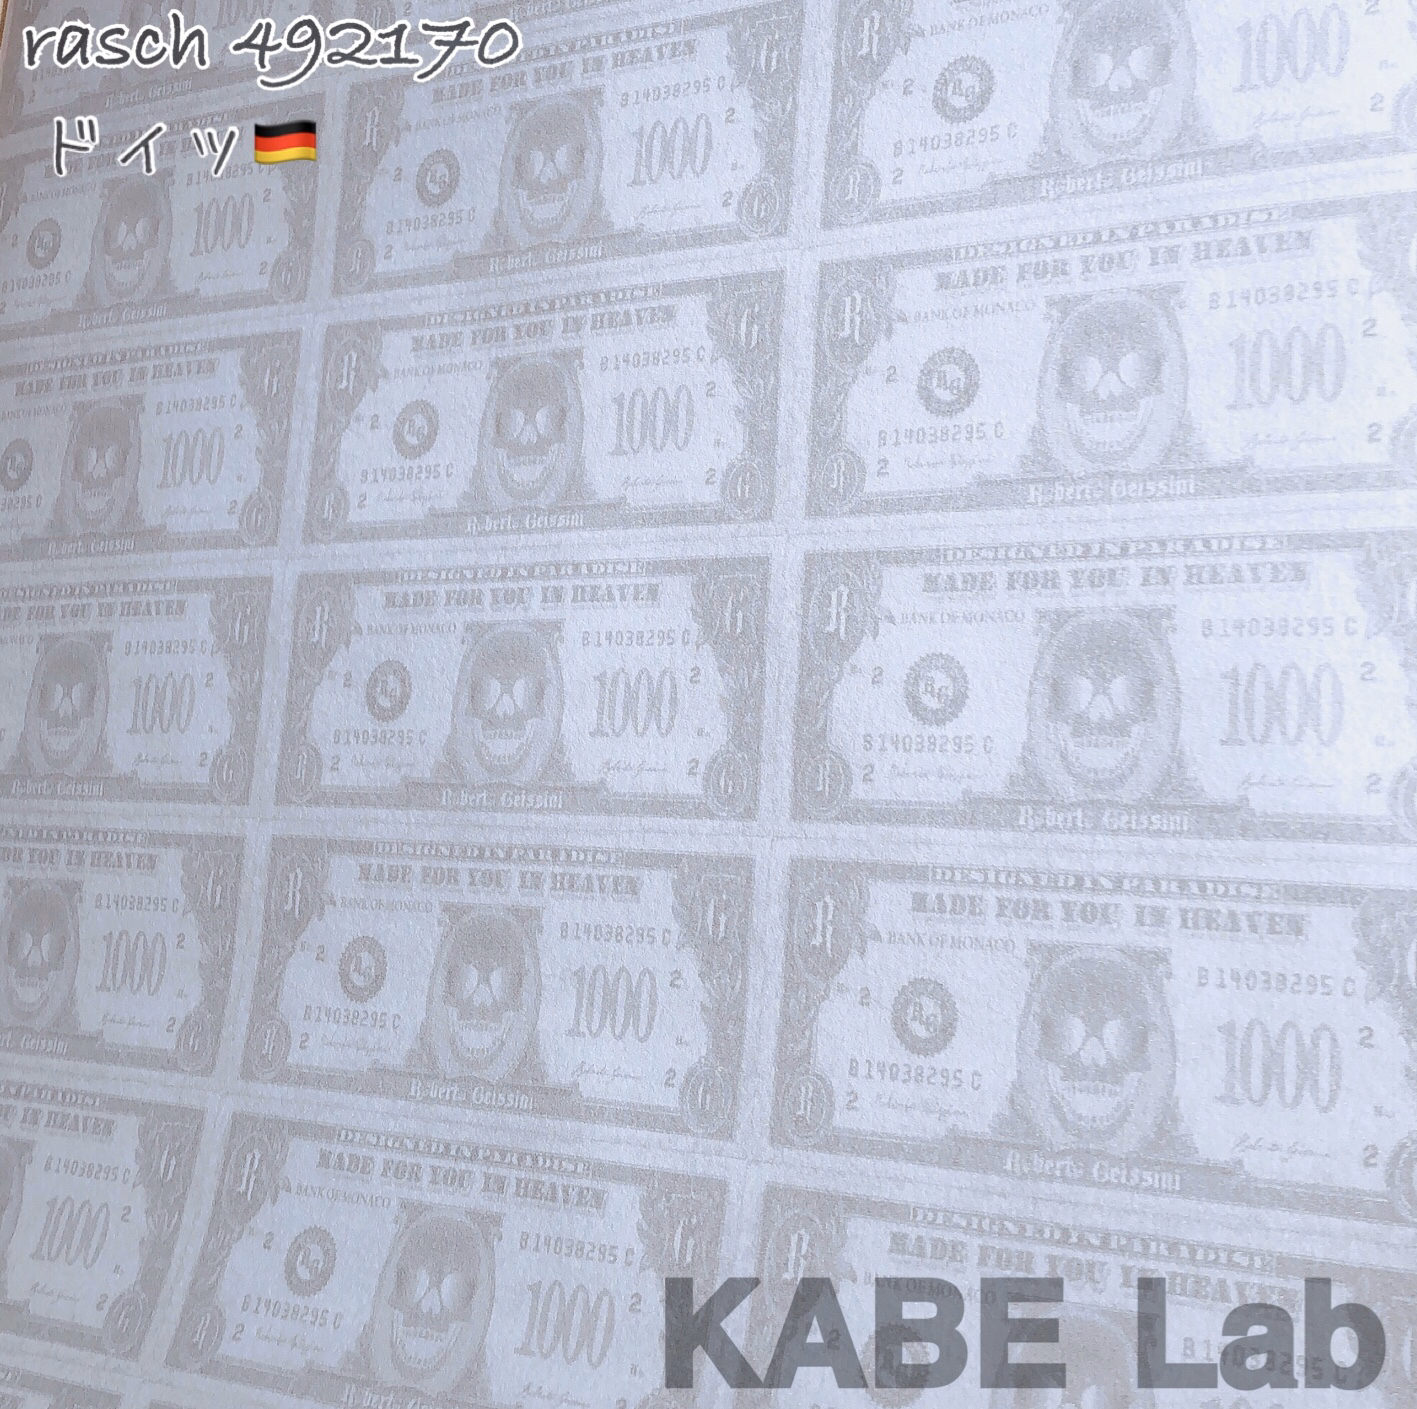 今日の壁紙 Work Shop Kabe Lab